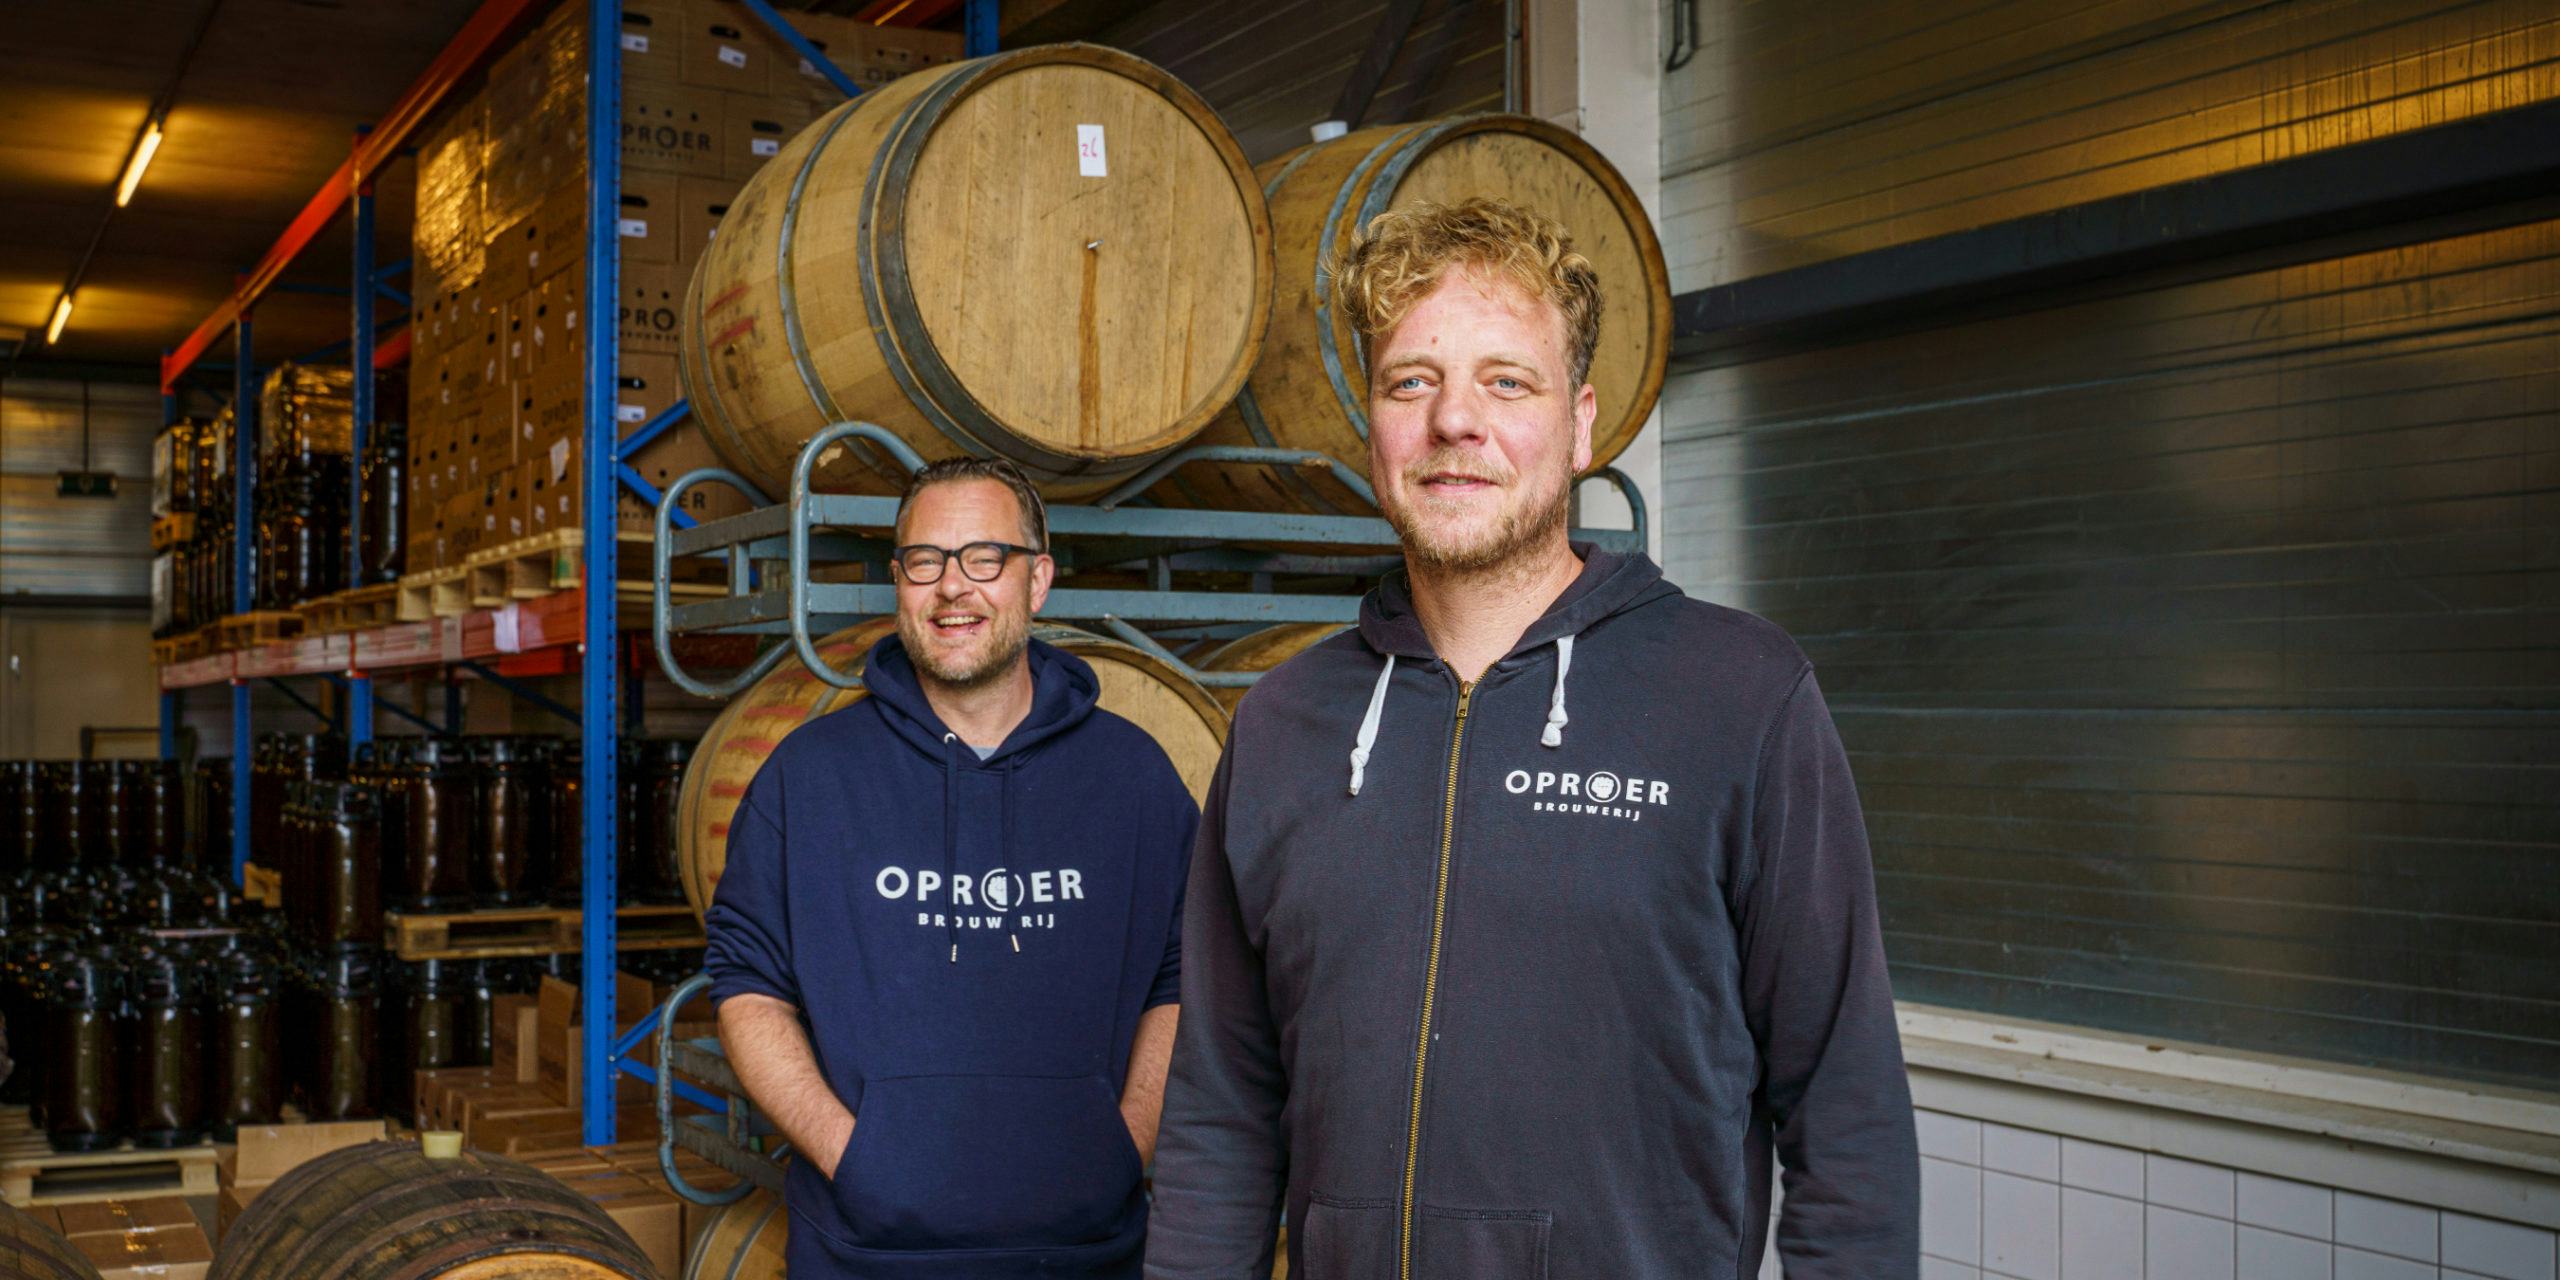 Brouwerij Oproer start crowfunding om afgebrand café te heropenen